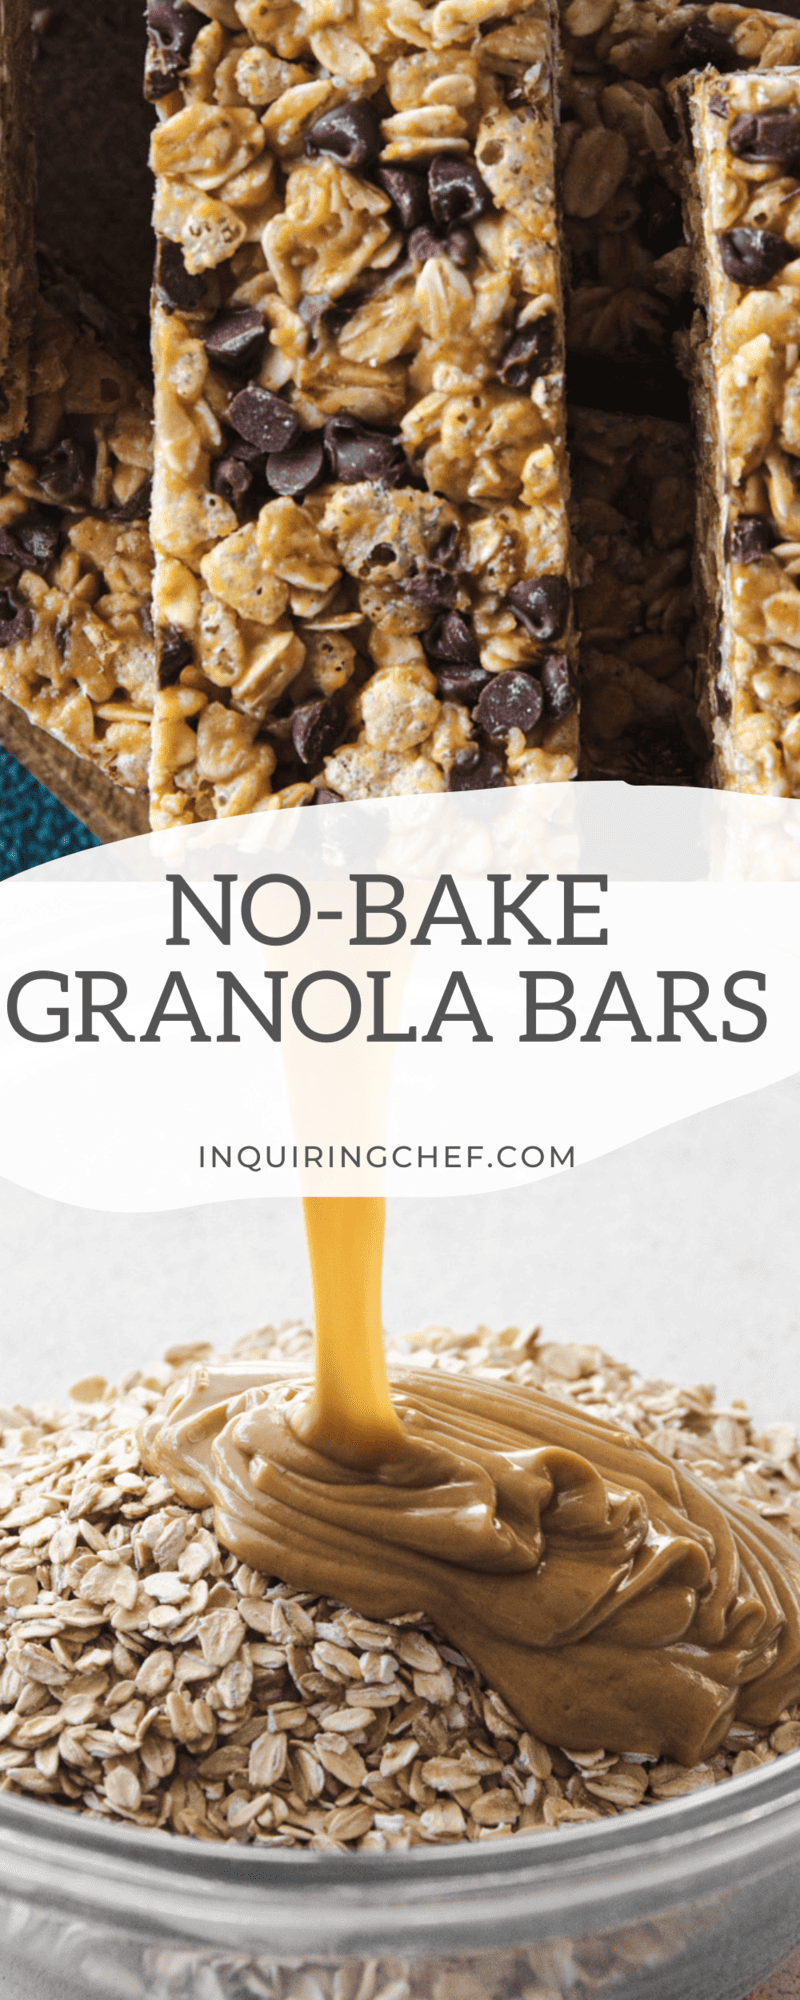 no-bake granola bars